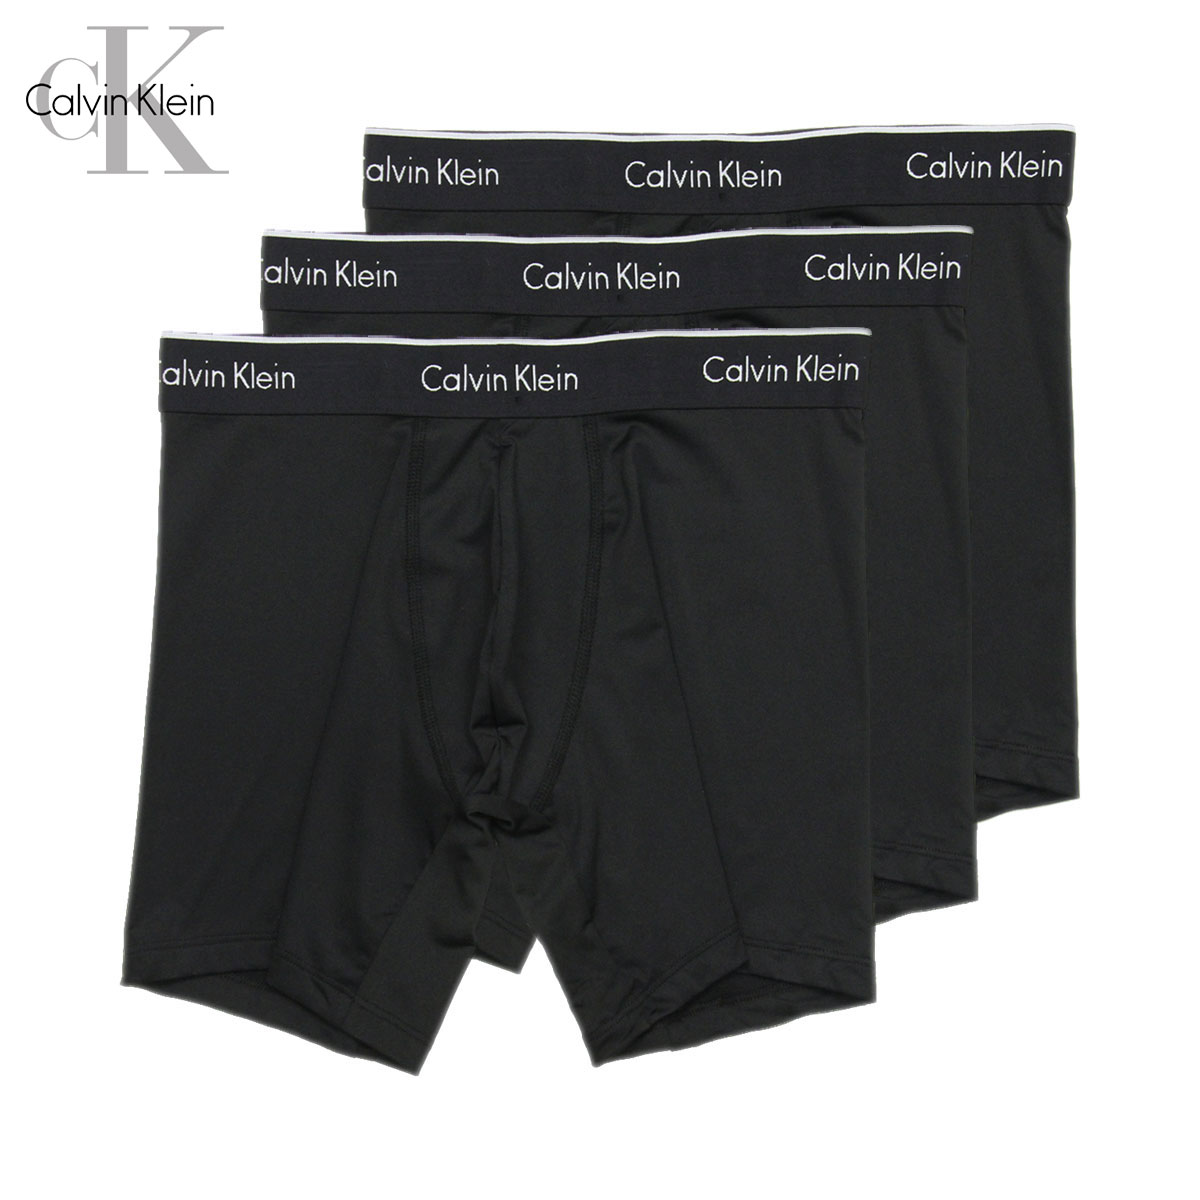 カルバンクライン ボクサーブリーフ メンズ 正規品 Calvin Klein アンダーウェア ボクサーブリーフ 下着 3枚セット マクロファイバー 3PACK MICROFIBER BOXER BRIEFS